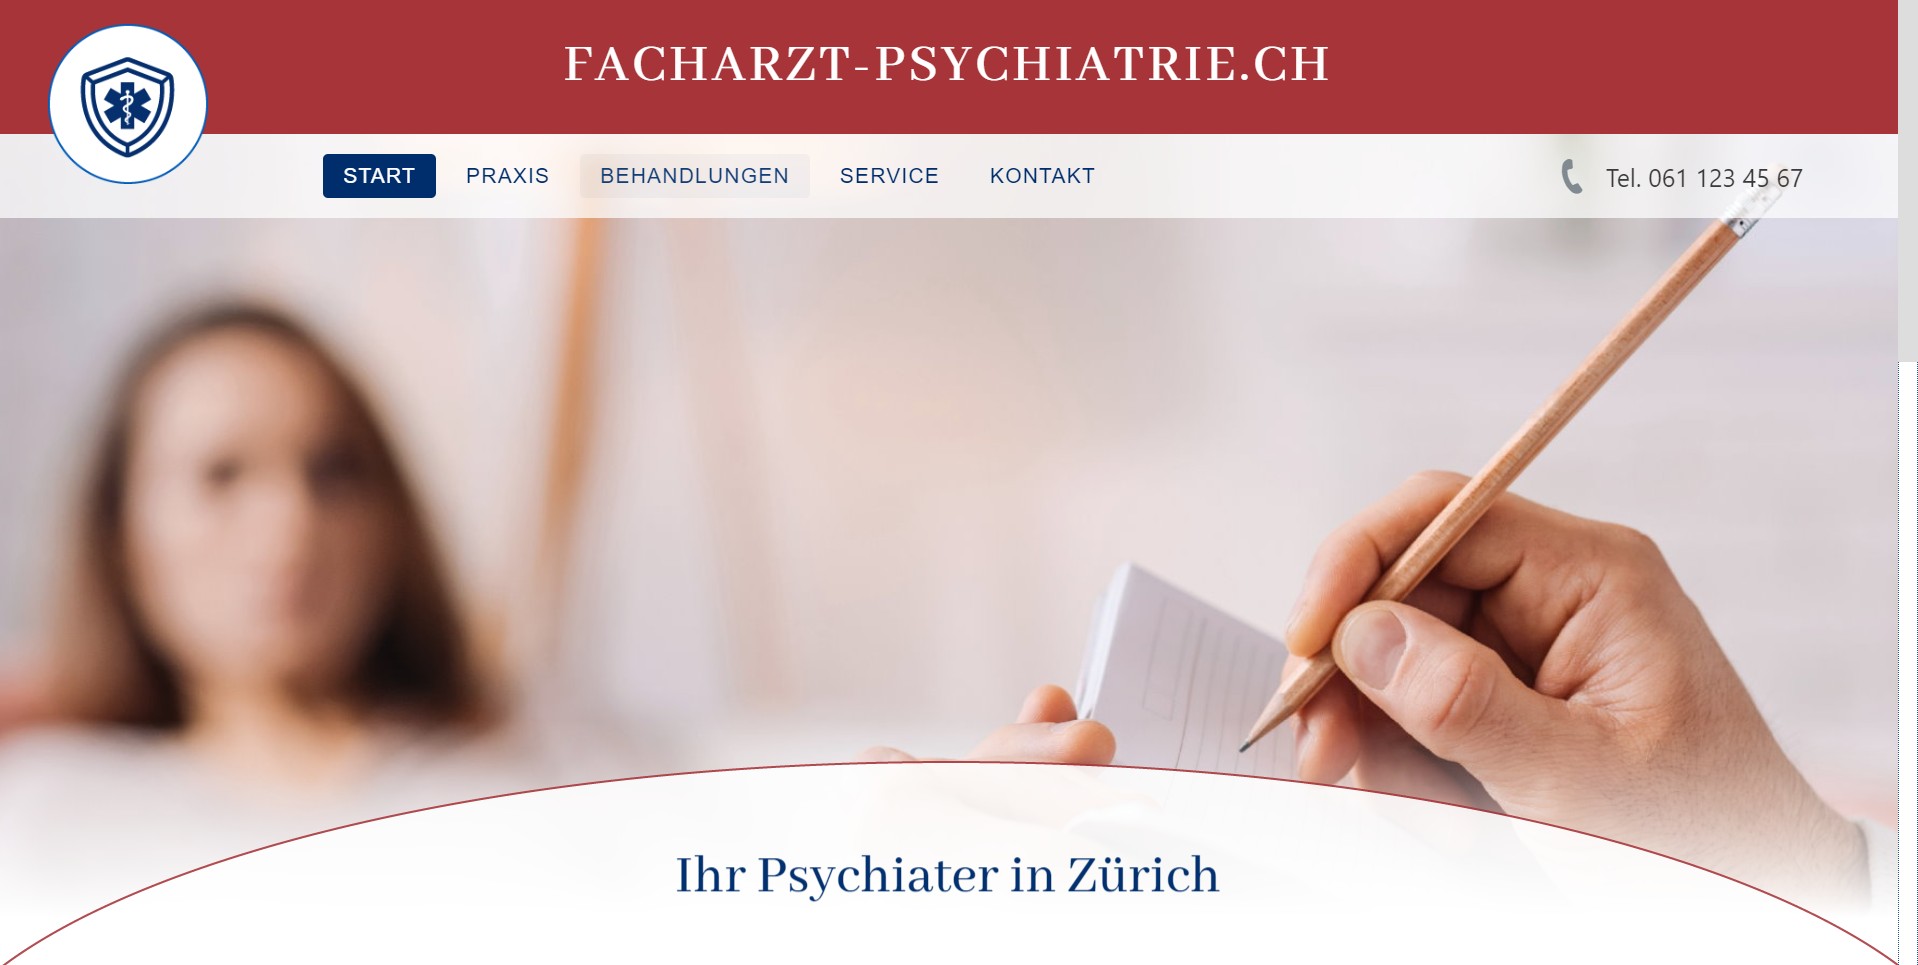 Facharzt-Psychiatrie.ch